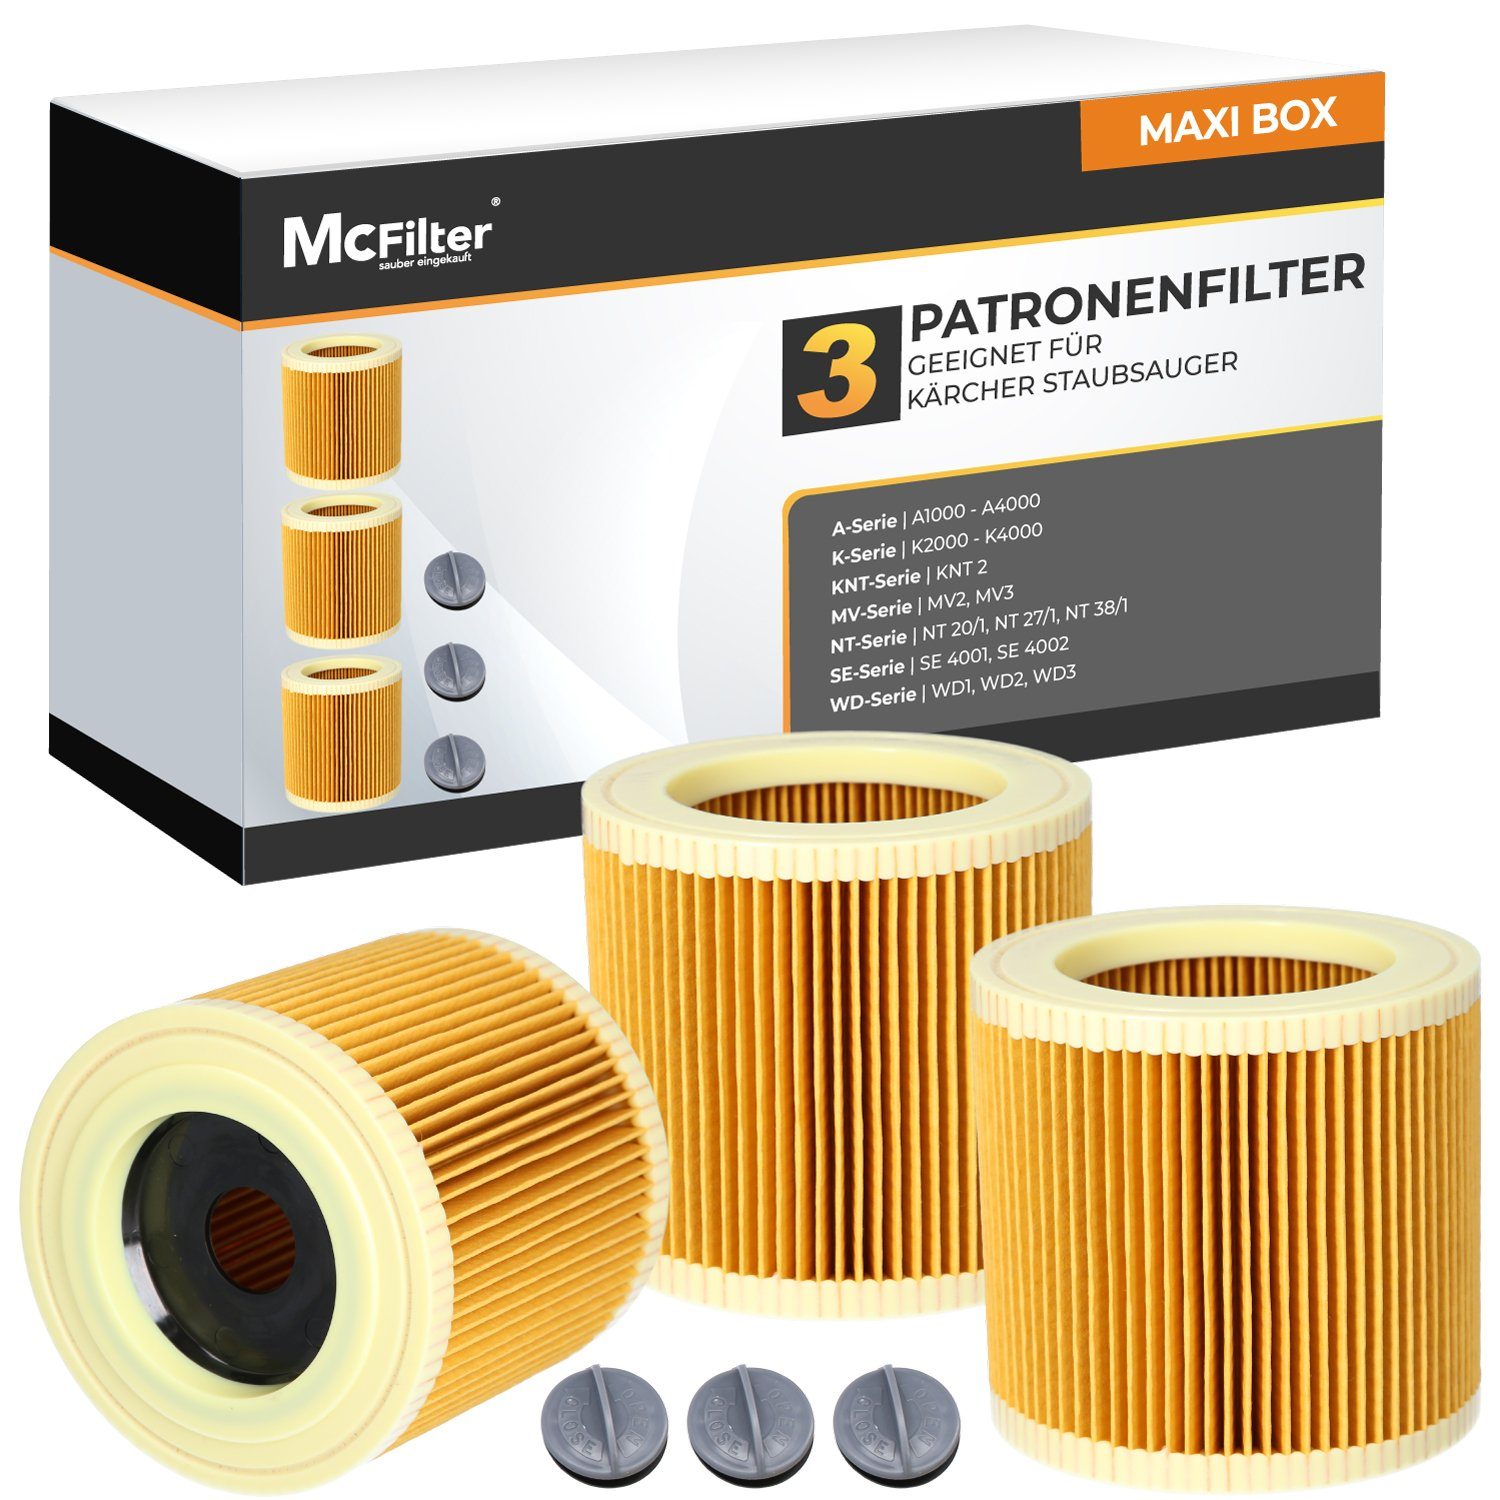 McFilter Patronenfilter (3 Filter) Lamellenfilter, für Kärcher  Nass-Trockensauger Staubsauger A 3100 A 4000 PLUS, A 2120 Me 2131 PT, wie  Kärcher 6.414-552.0, 6.414-772.0, 6.414-547.0, (3-St., Filter +  Verschlussschraube), gegen Feinstaub & Gerüche